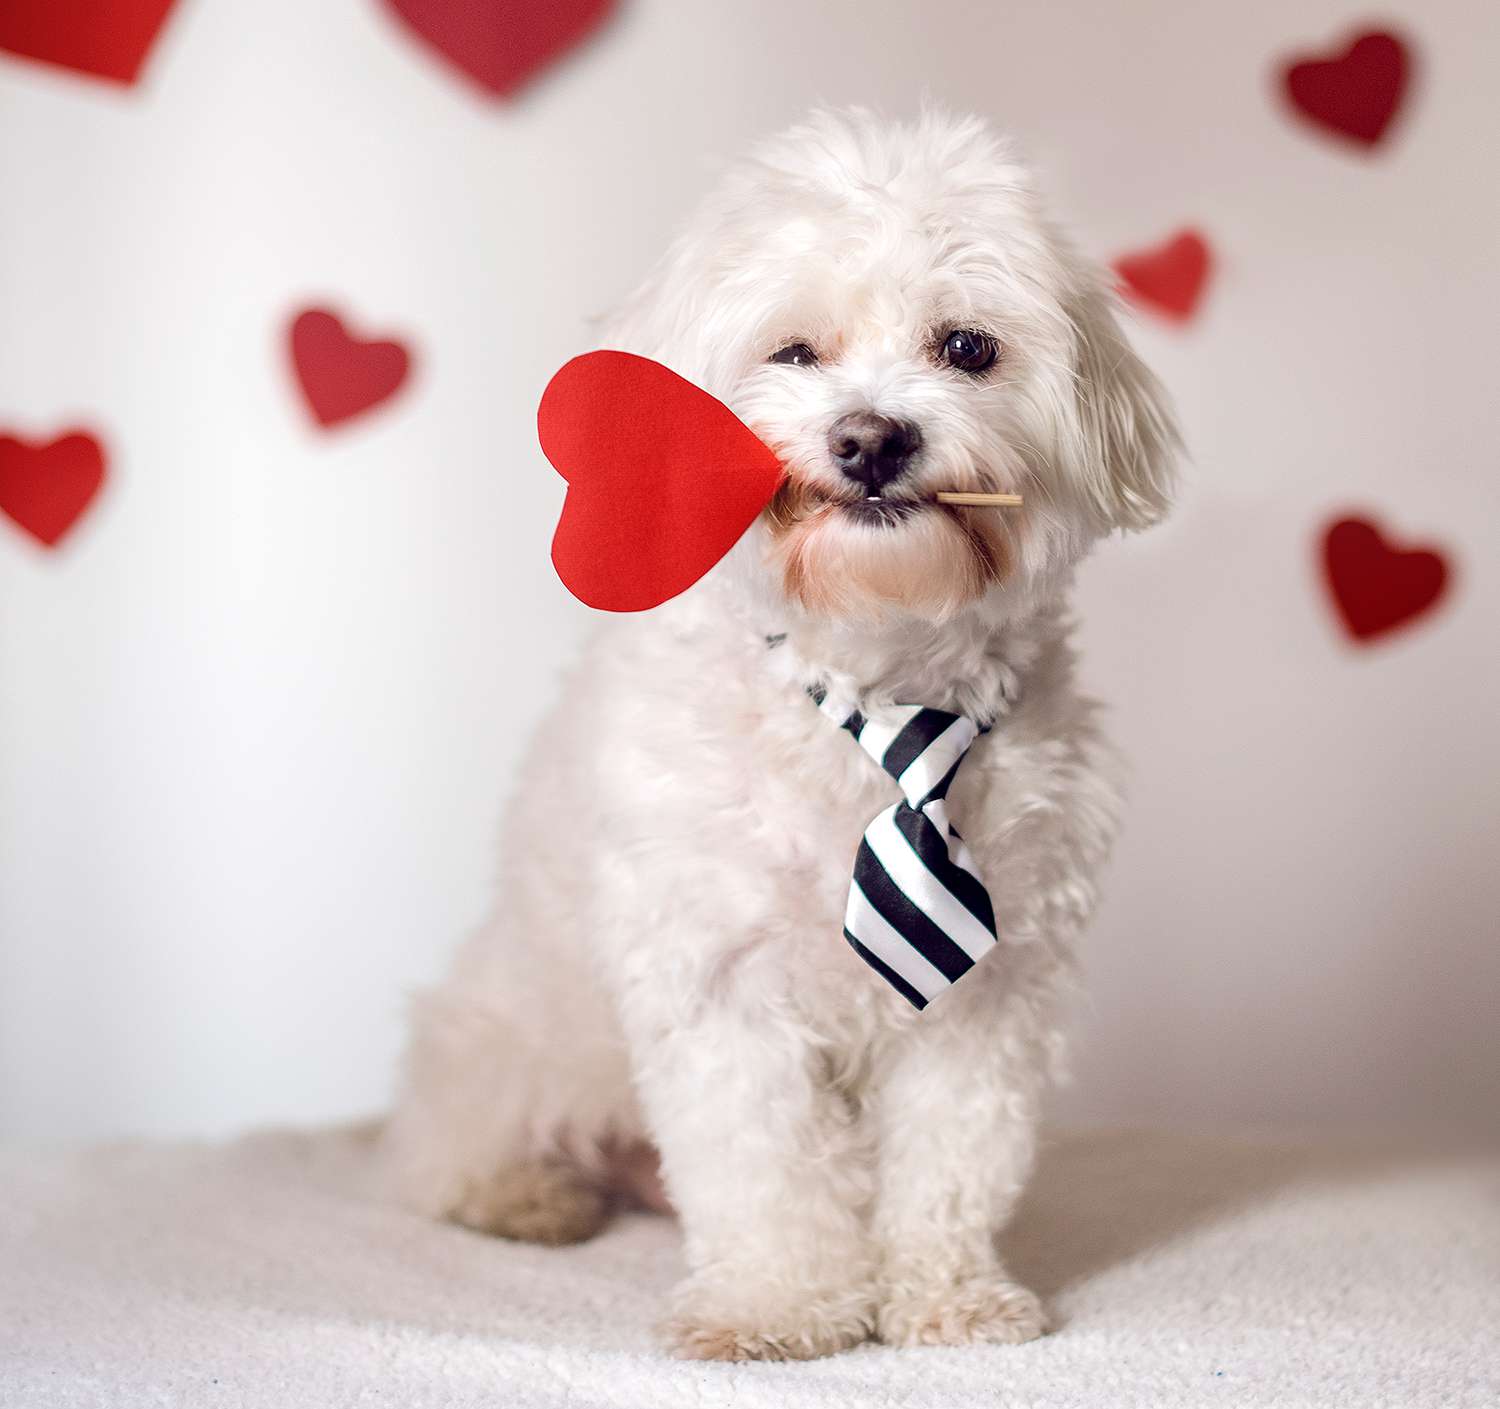 Maltese dog holding red heart